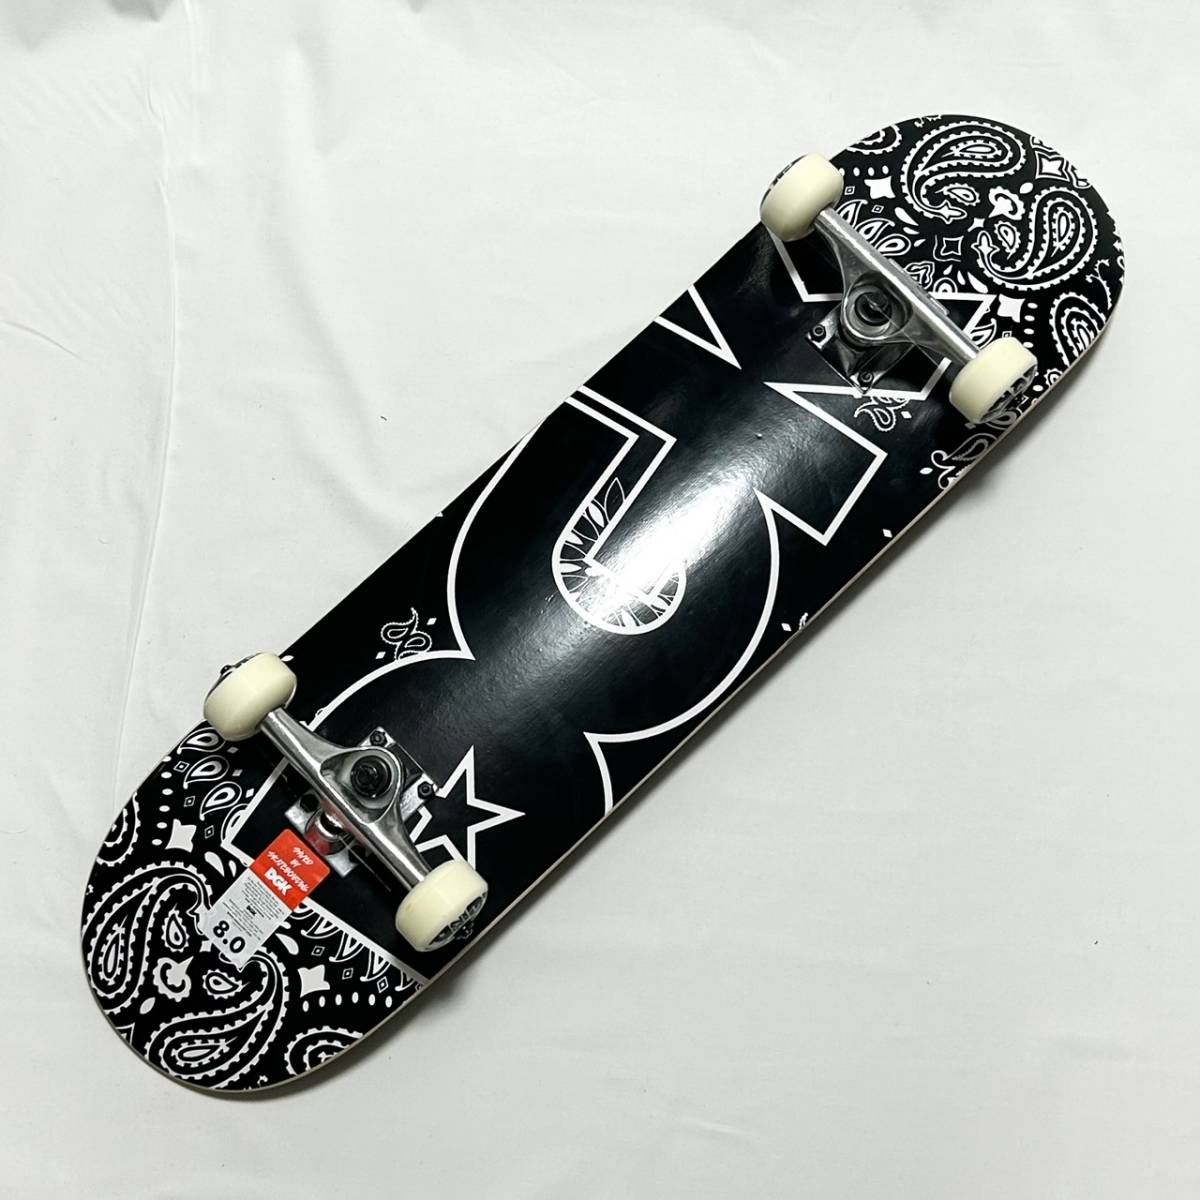 【新品】DGK スケボー 完成品 8.0 PAISLEY ディージーケー スケートボード コンプリート SKATE BOARD COMPLETE